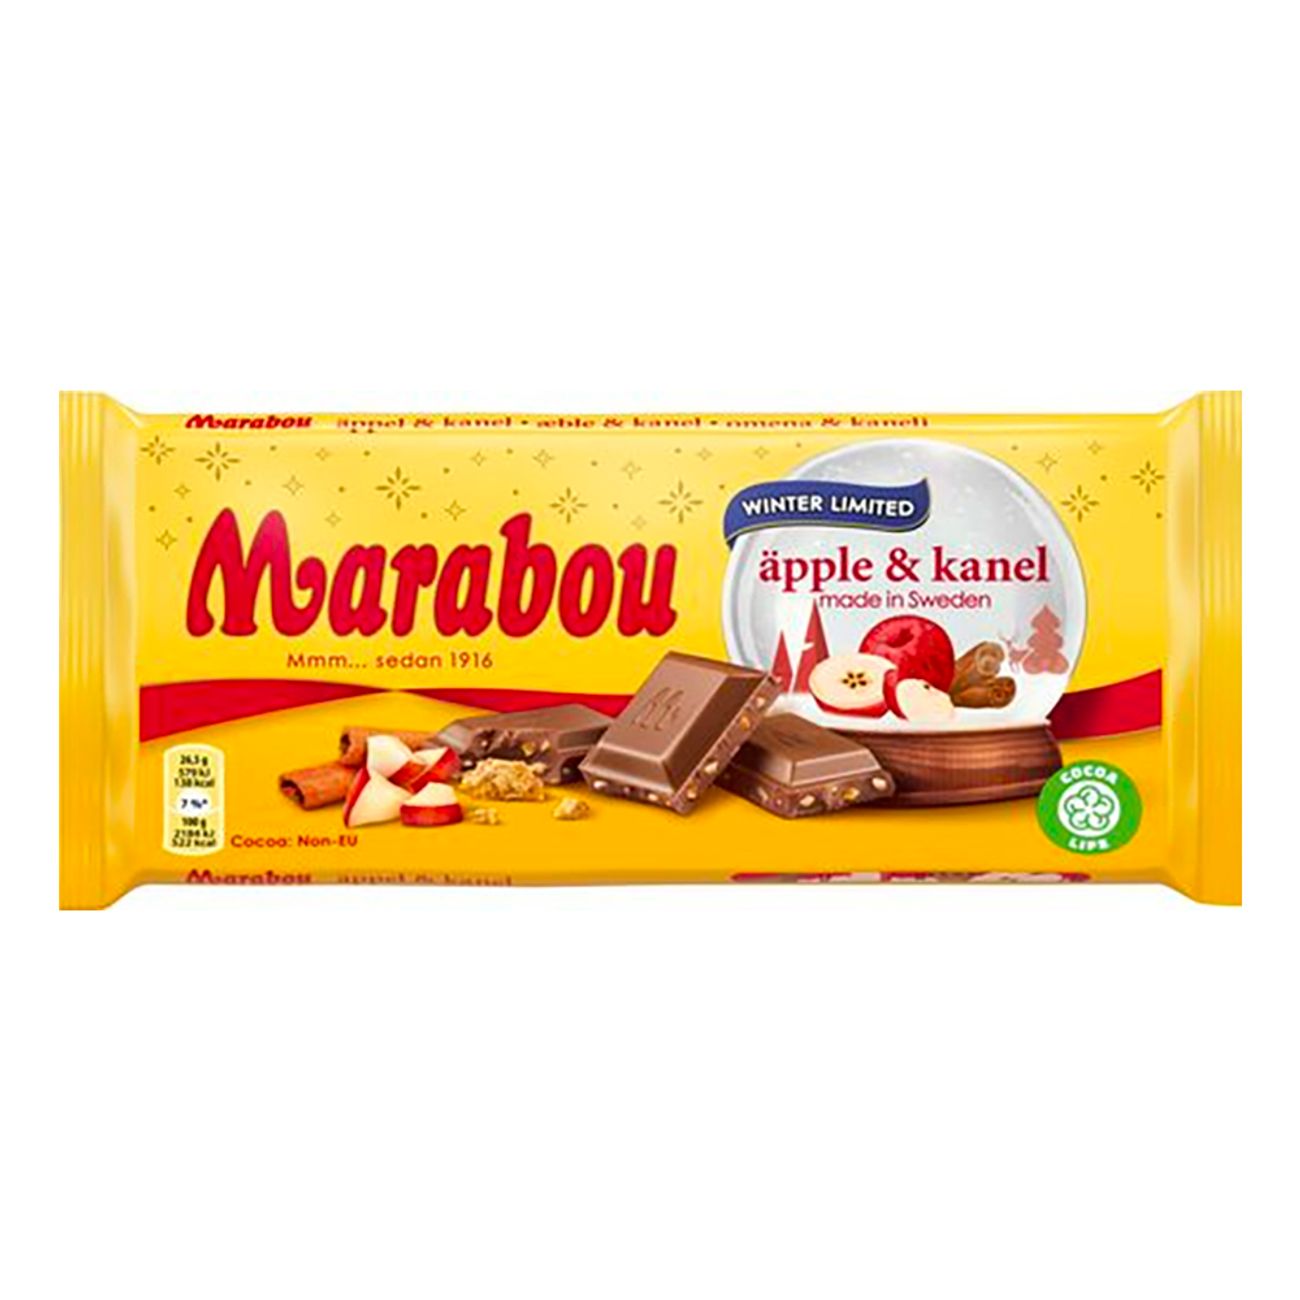 marabou-apple-kanel-chokladkaka-89925-1